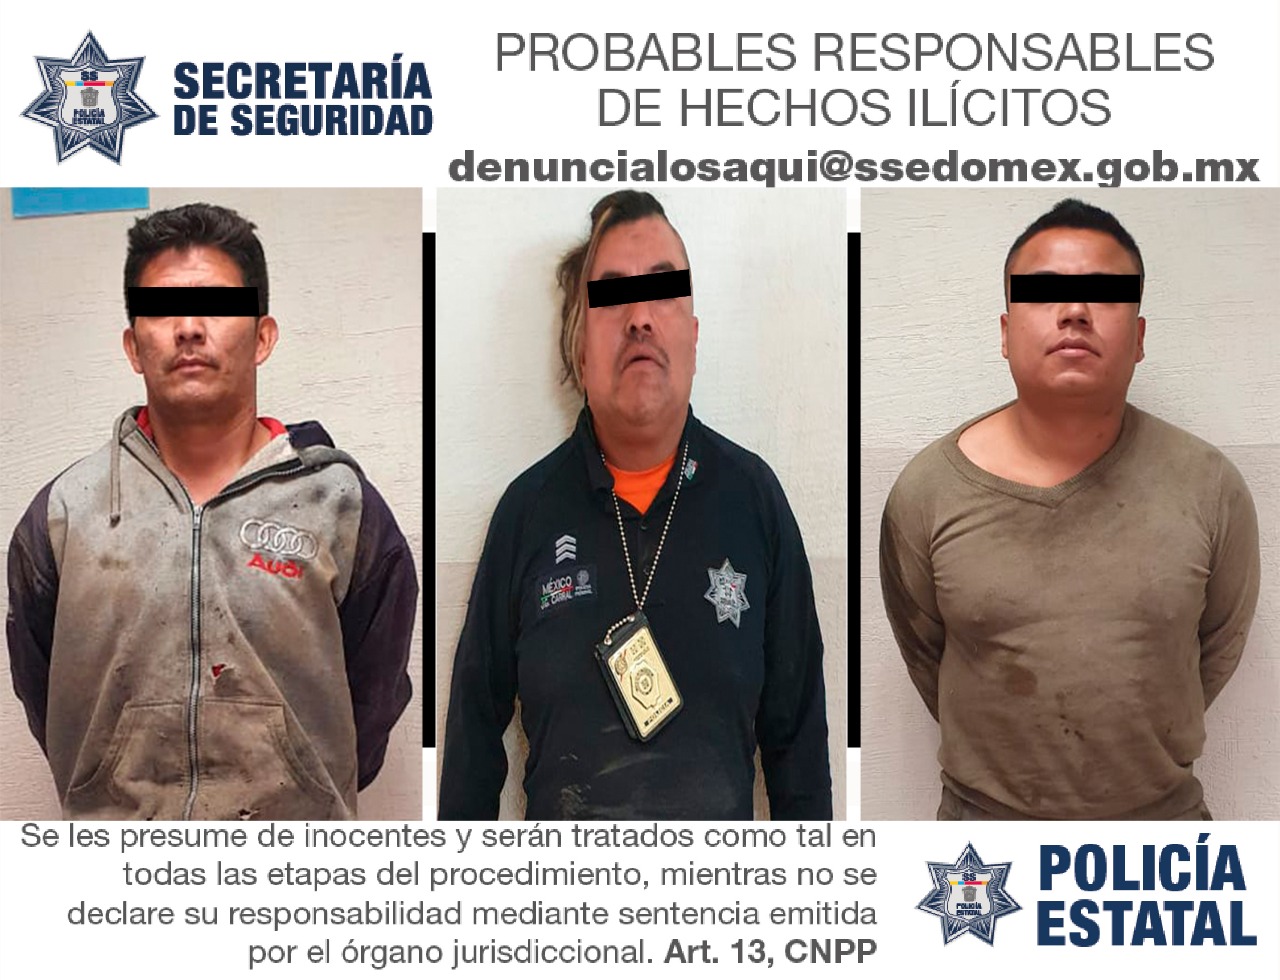 Elementos de la secretaría de seguridad detienen a tres sujetos probables responsables en el delito de robo equiparado